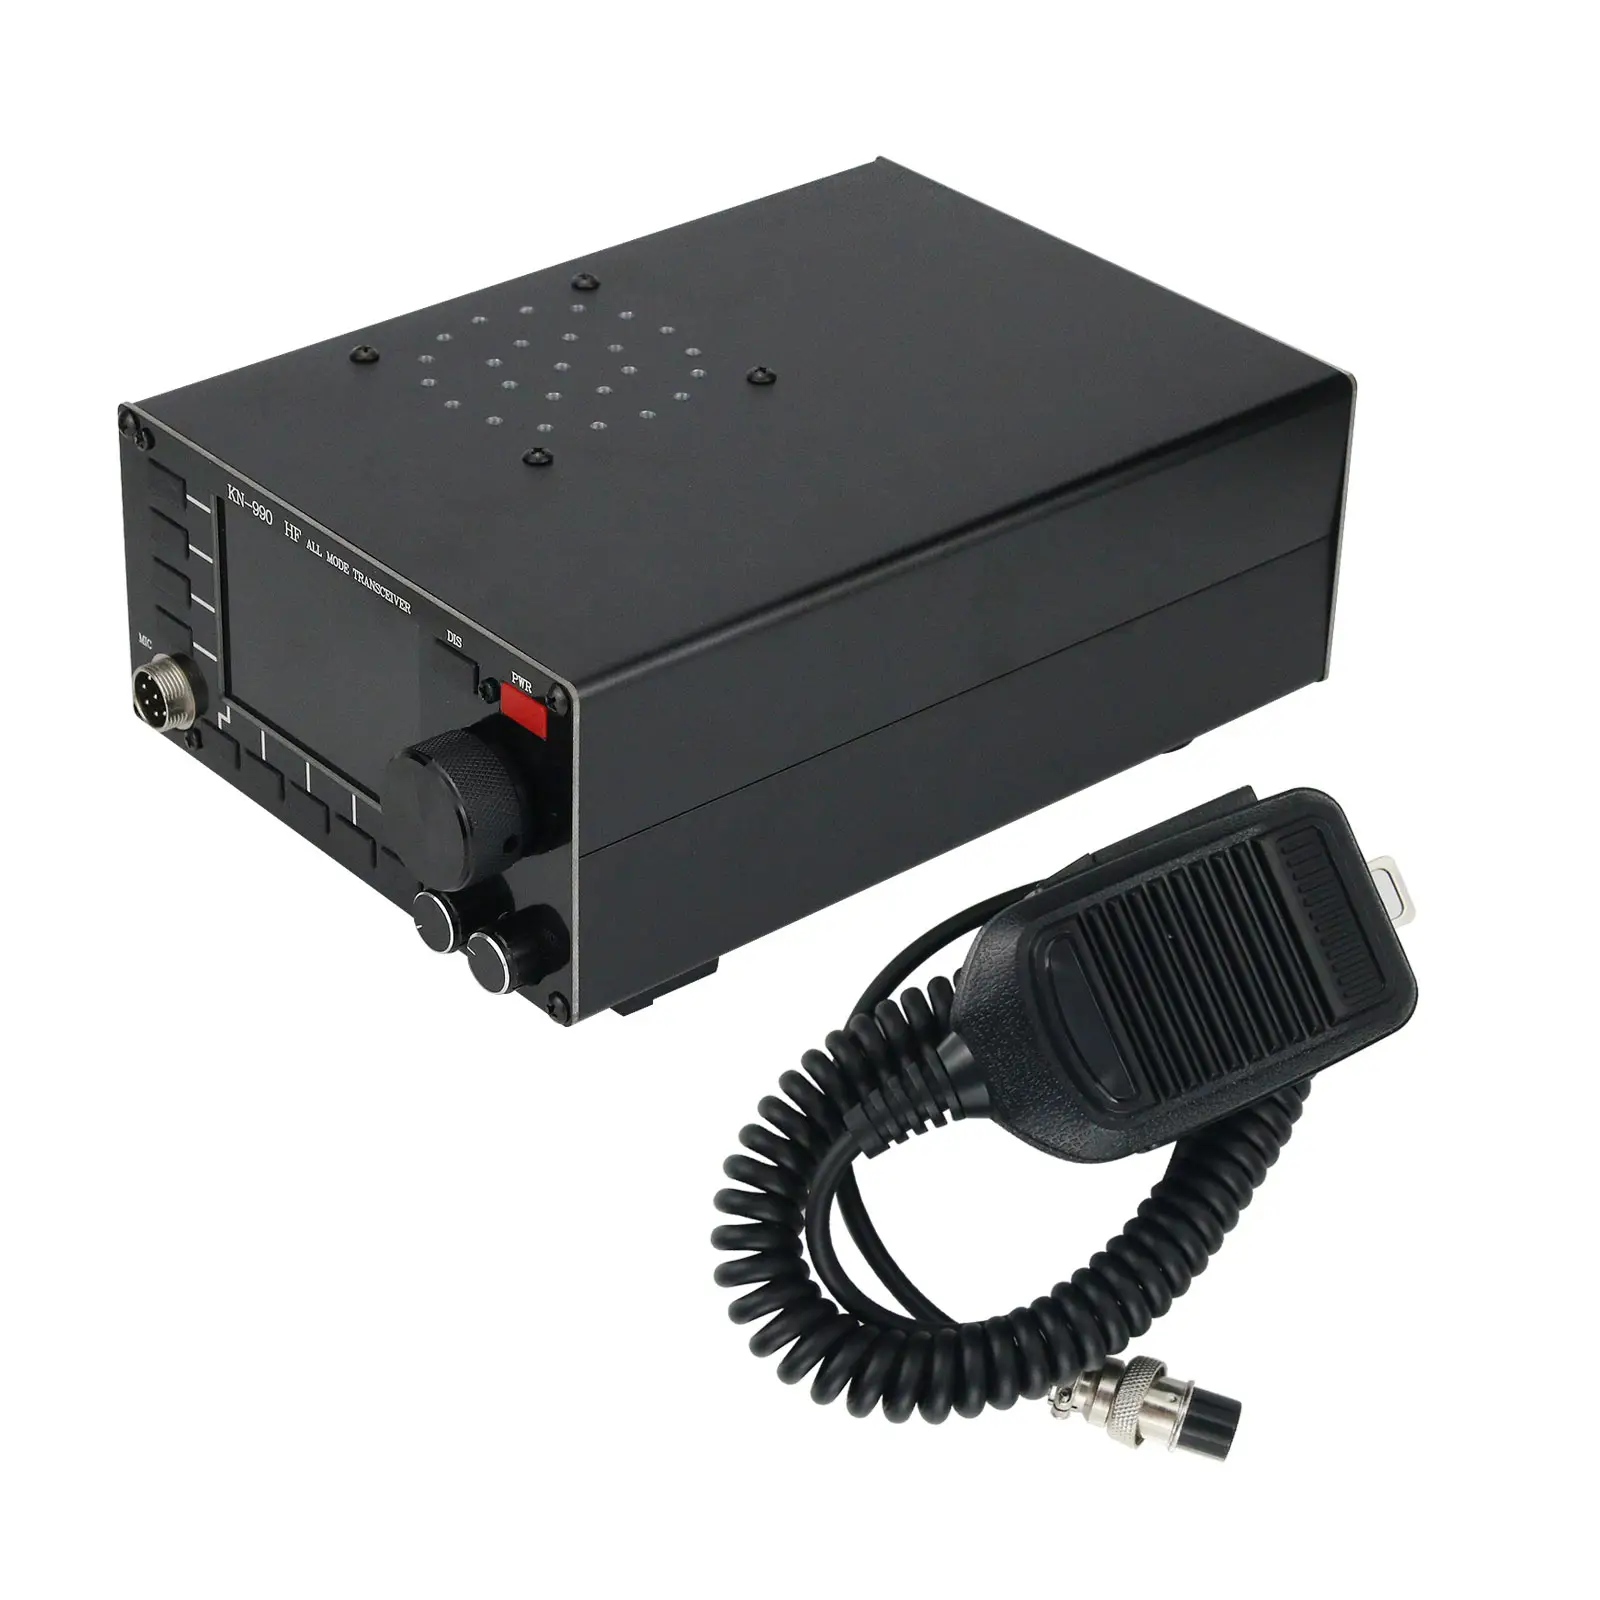 KN990 HF Penerima Semua Mode Pemancar SSB/CW/AM/FM/DIGITAL Mode Kerja Transceiver Gelombang Pendek